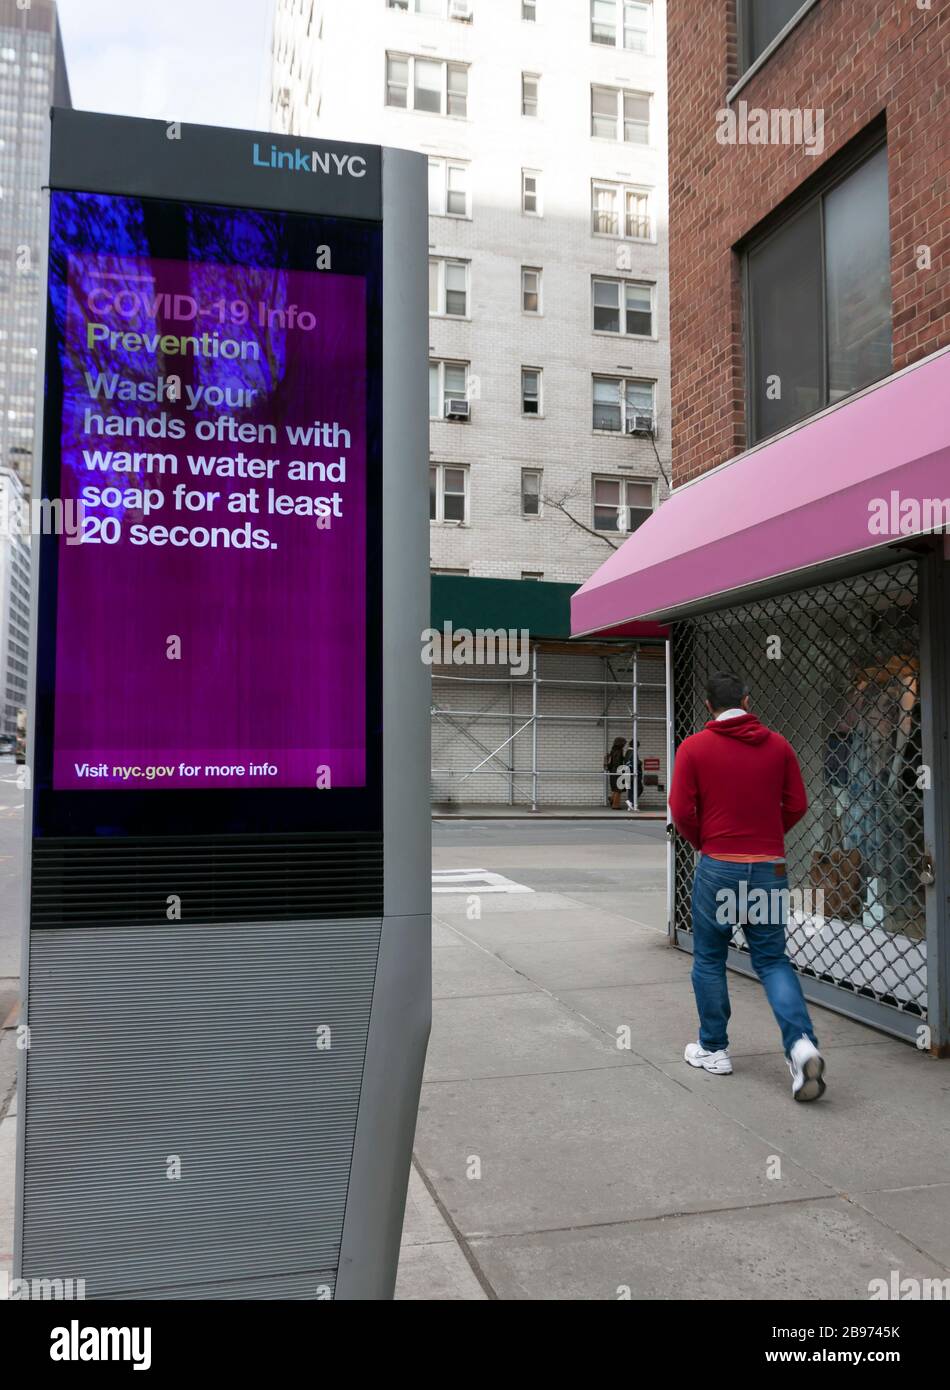 LinkNYC digitale Kiosk segno sul marciapiede che mostra Covid-19 (coronavirus) prevenzione suggerimenti e consigli sul lavaggio a mano a New Yorkers. Foto Stock